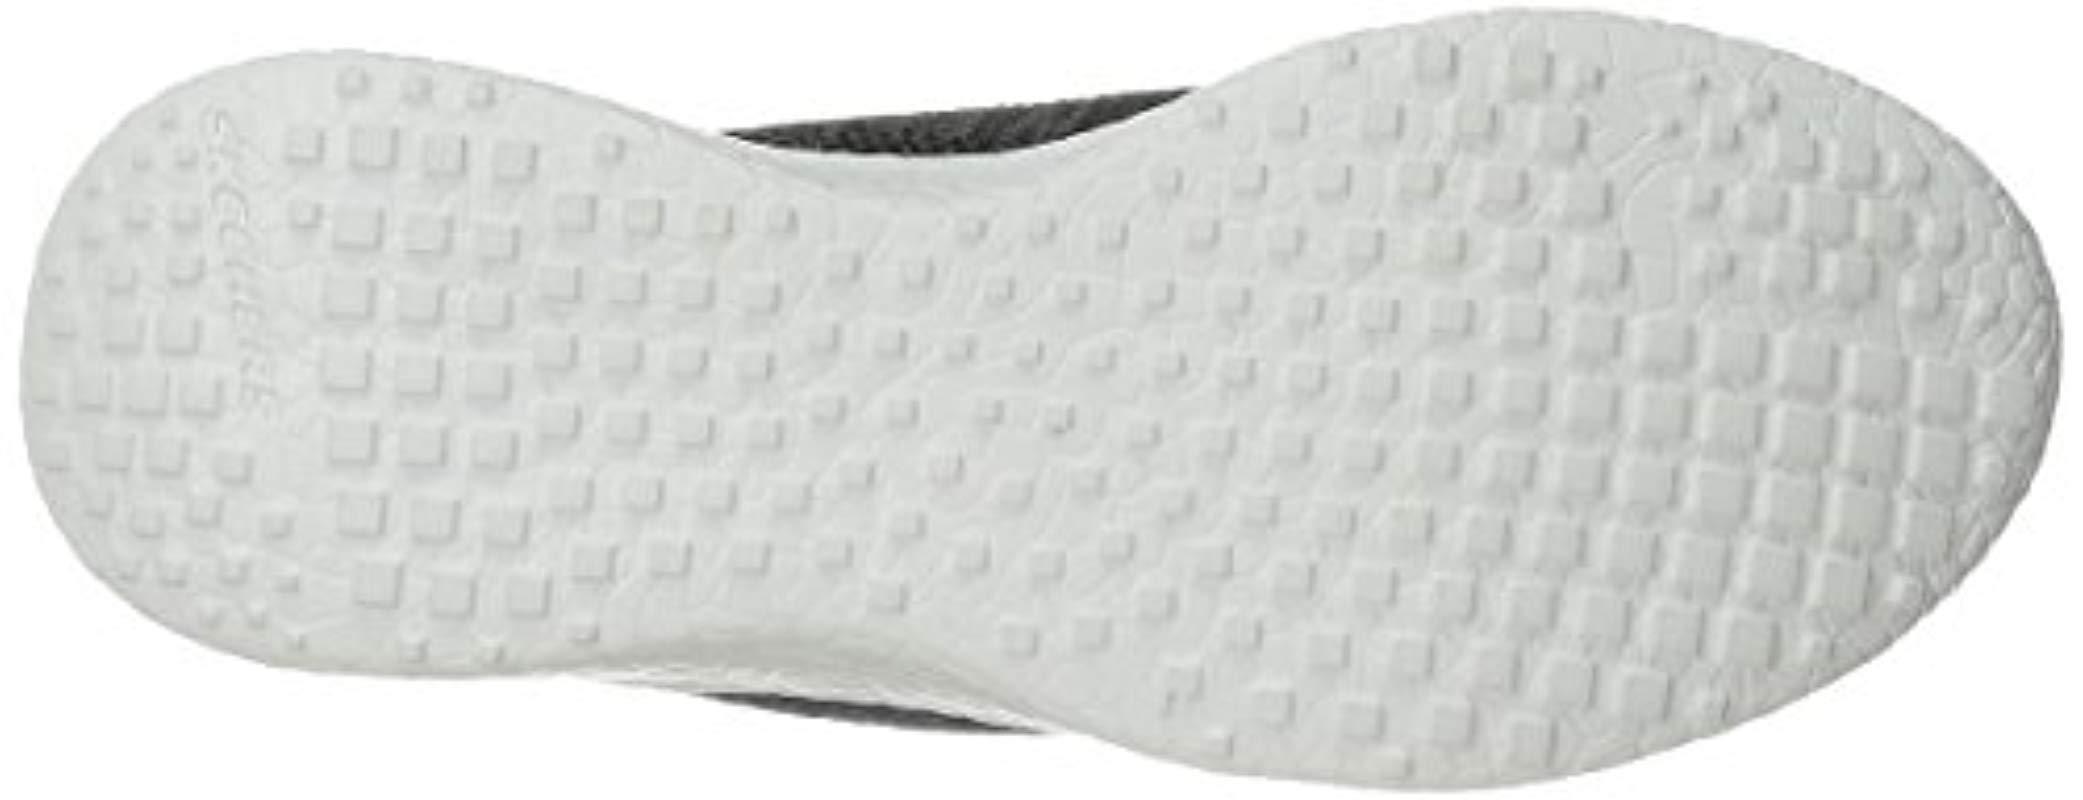 Skechers Sport Burst Divergent Demi Boot Sneaker in Black/White (Black) -  Lyst